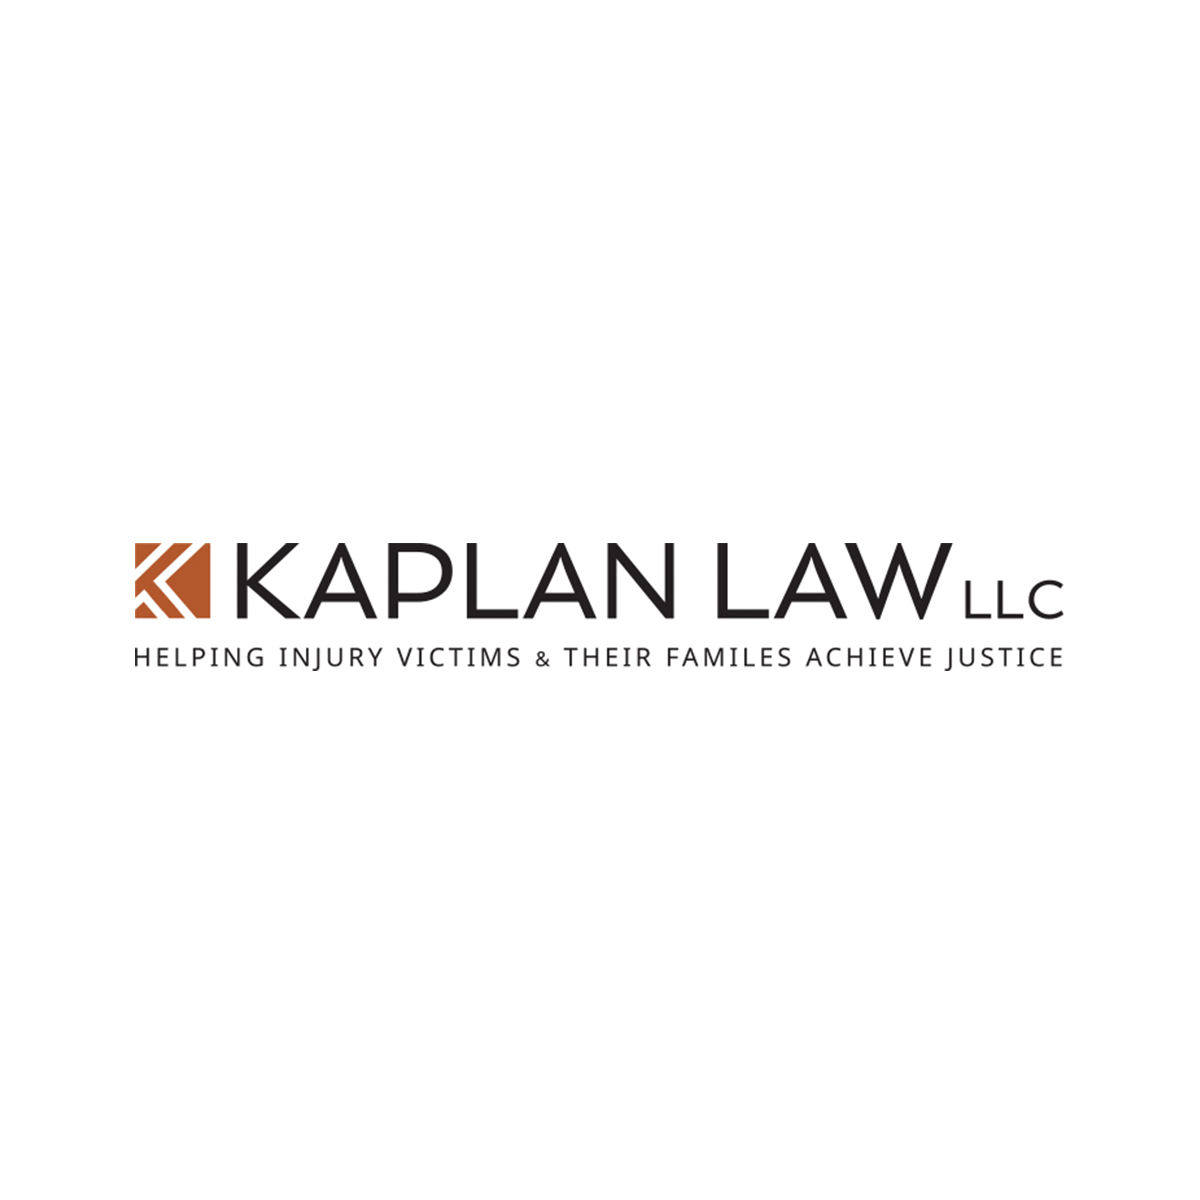 Kaplan Law LLC